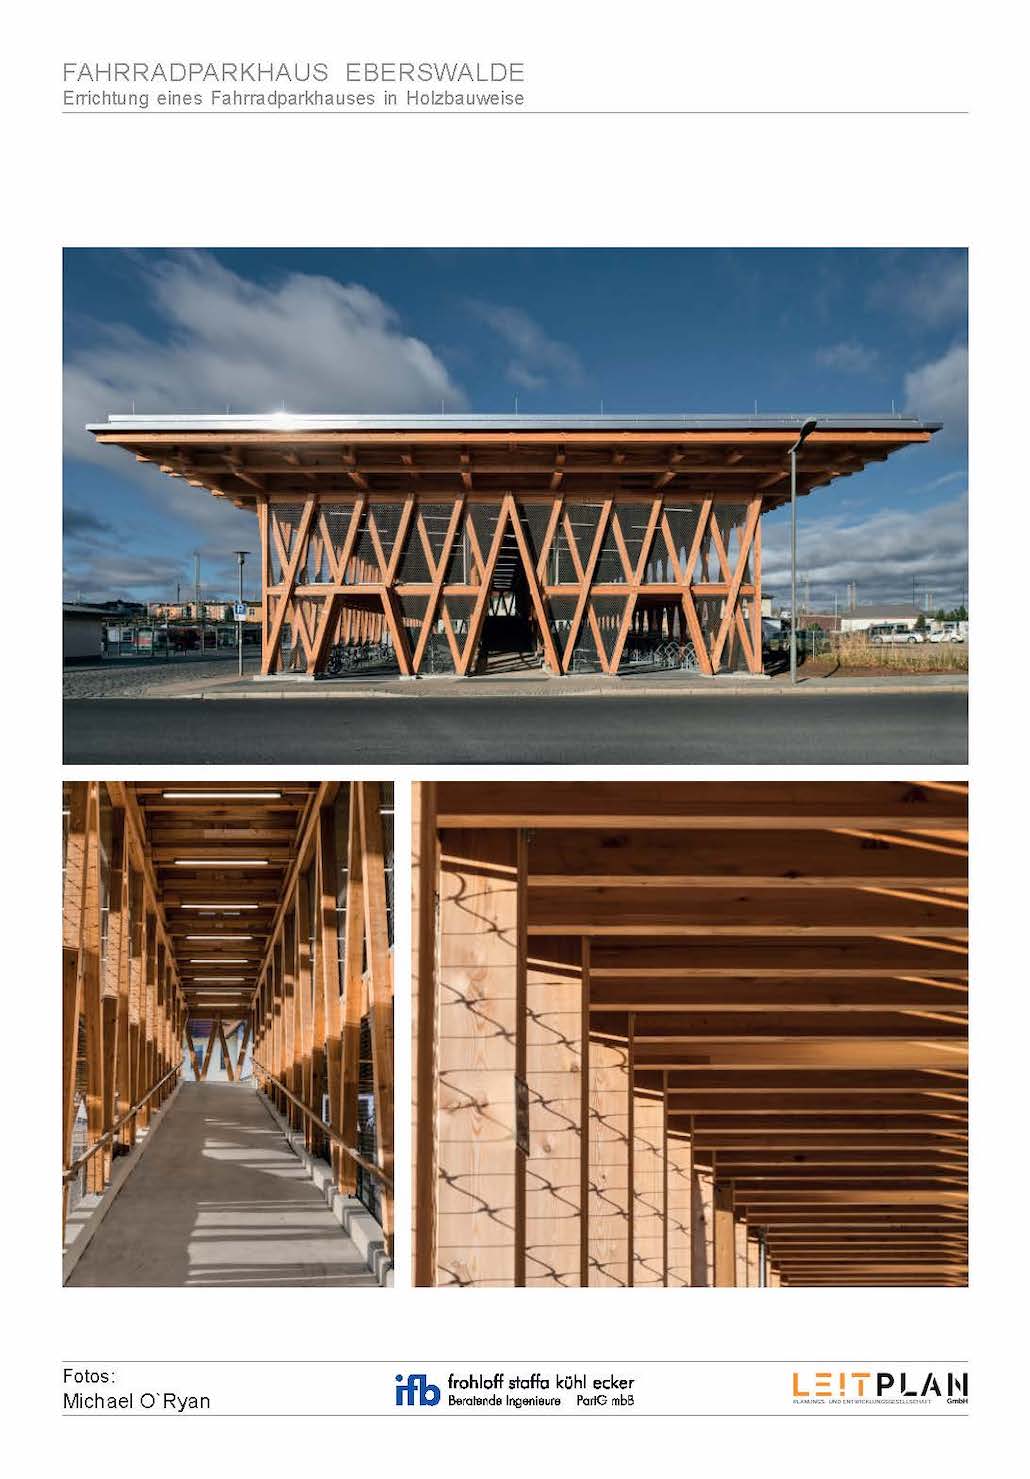 Fahrradparkhaus als Holzkonstruktion, EberswaldeBildnachweis: Michael O`Ryan